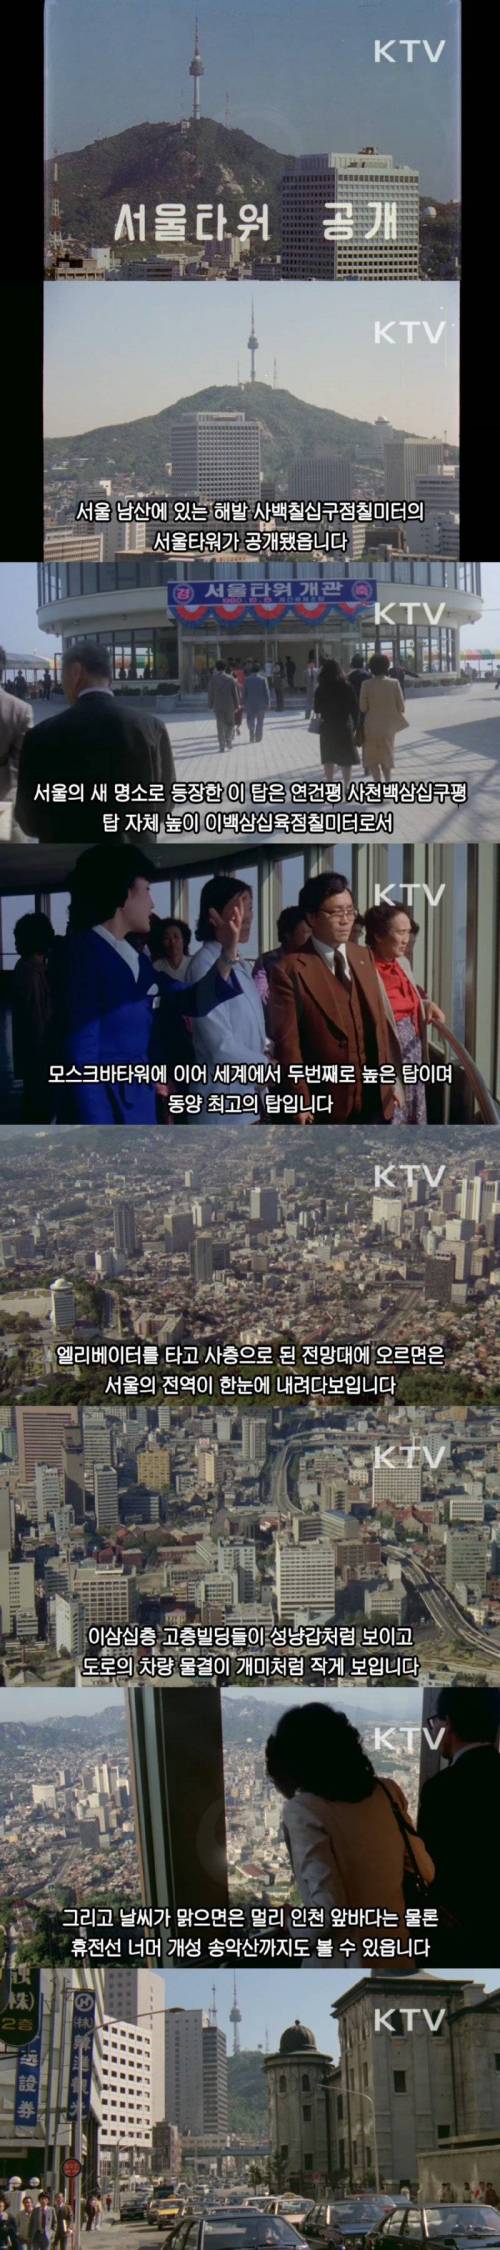 서울 남산에 대형 방송탑을 건설한 이유